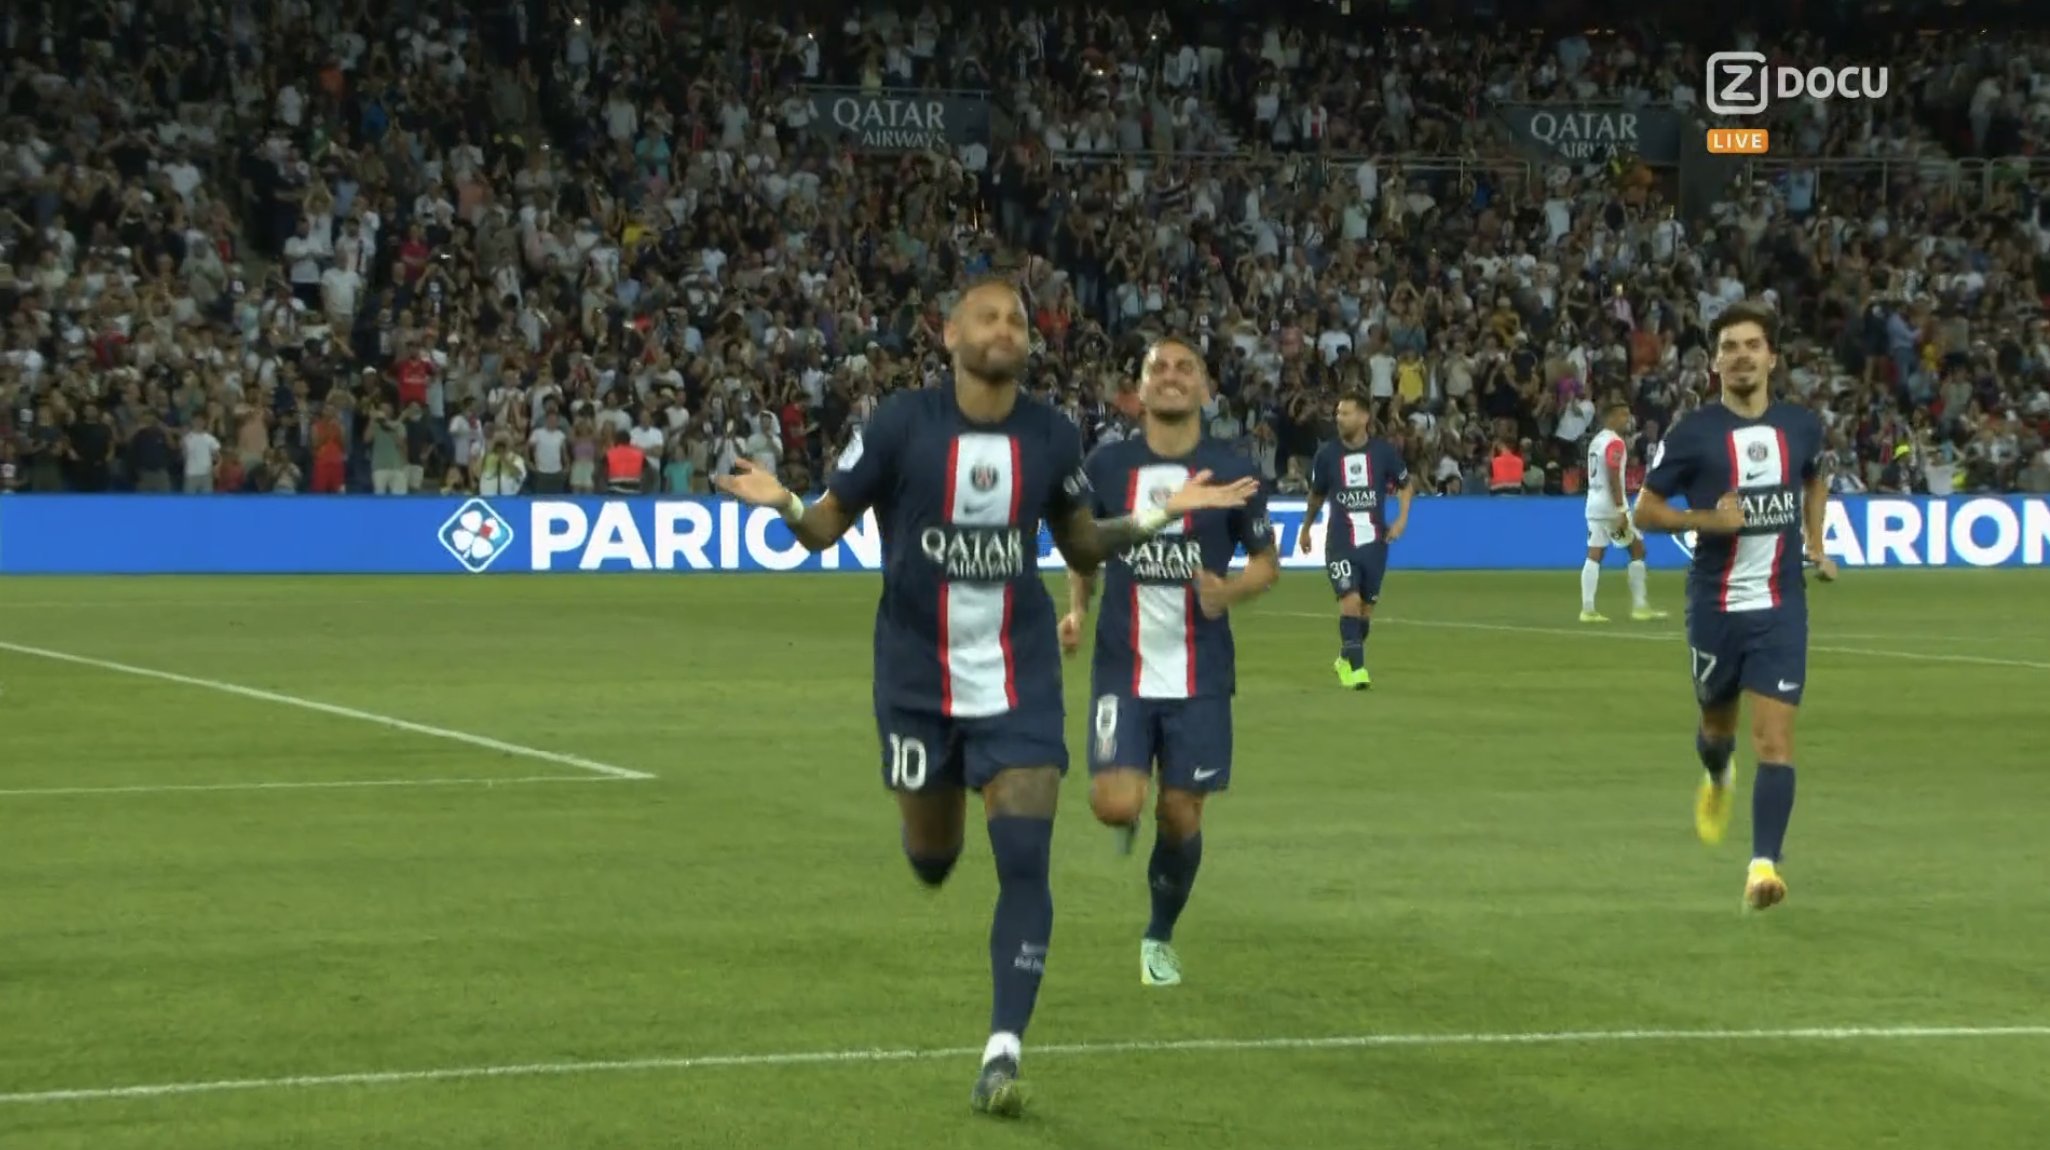 Neymar double la mise, le PSG mène désormais 2-0 face à Montpellier (VIDEO)